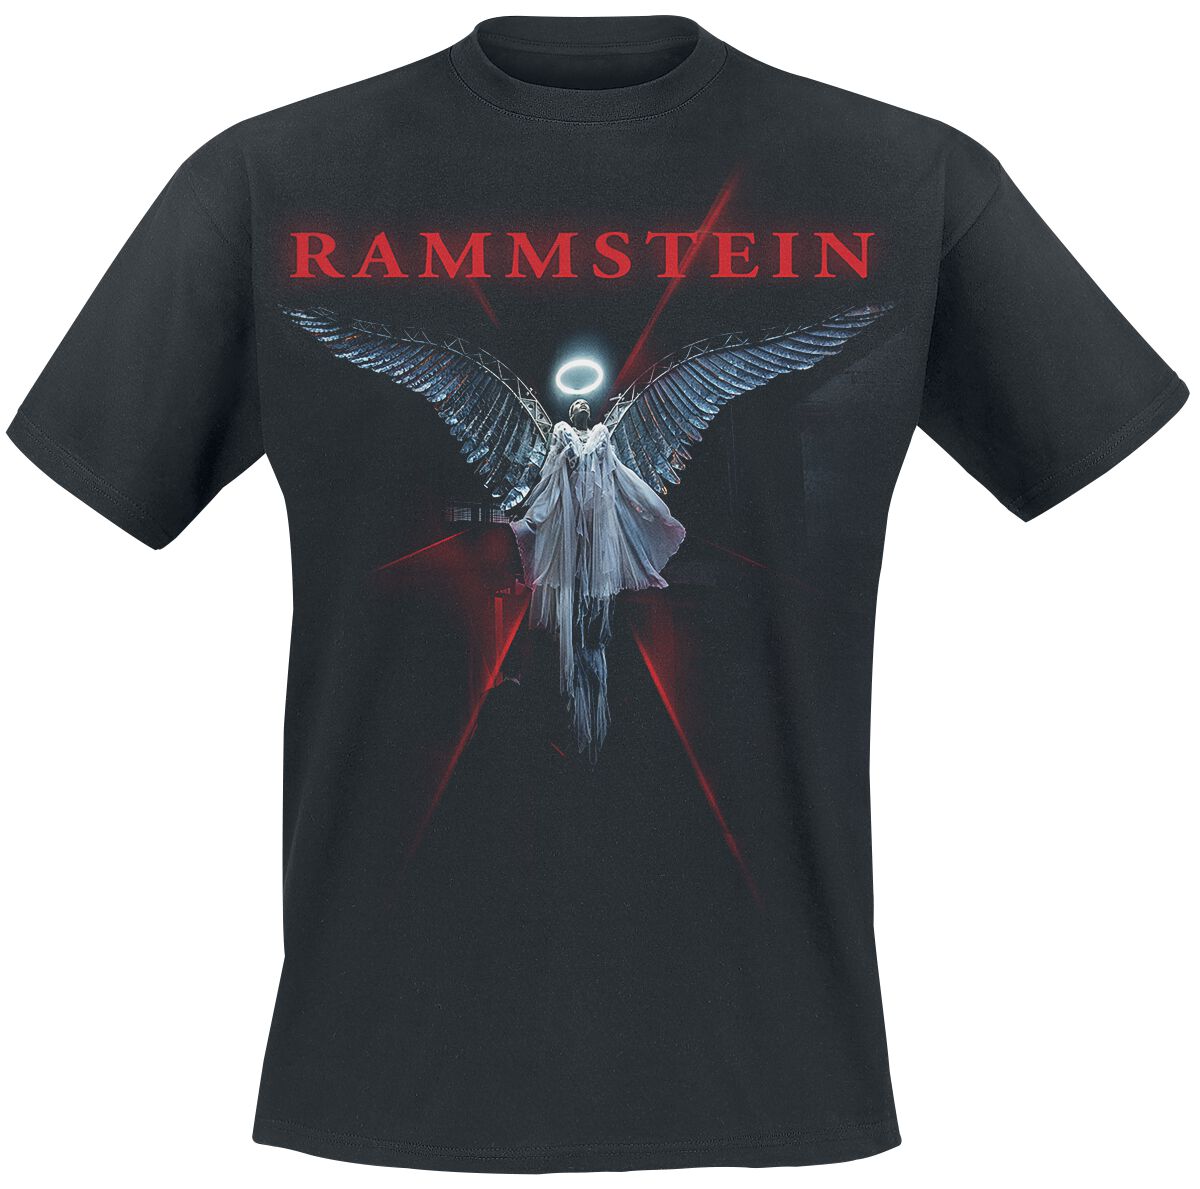 Rammstein T-Shirt - Du-Ich-Wir-Ihr - S bis 5XL - für Männer - Größe S - schwarz  - Lizenziertes Merchandise!